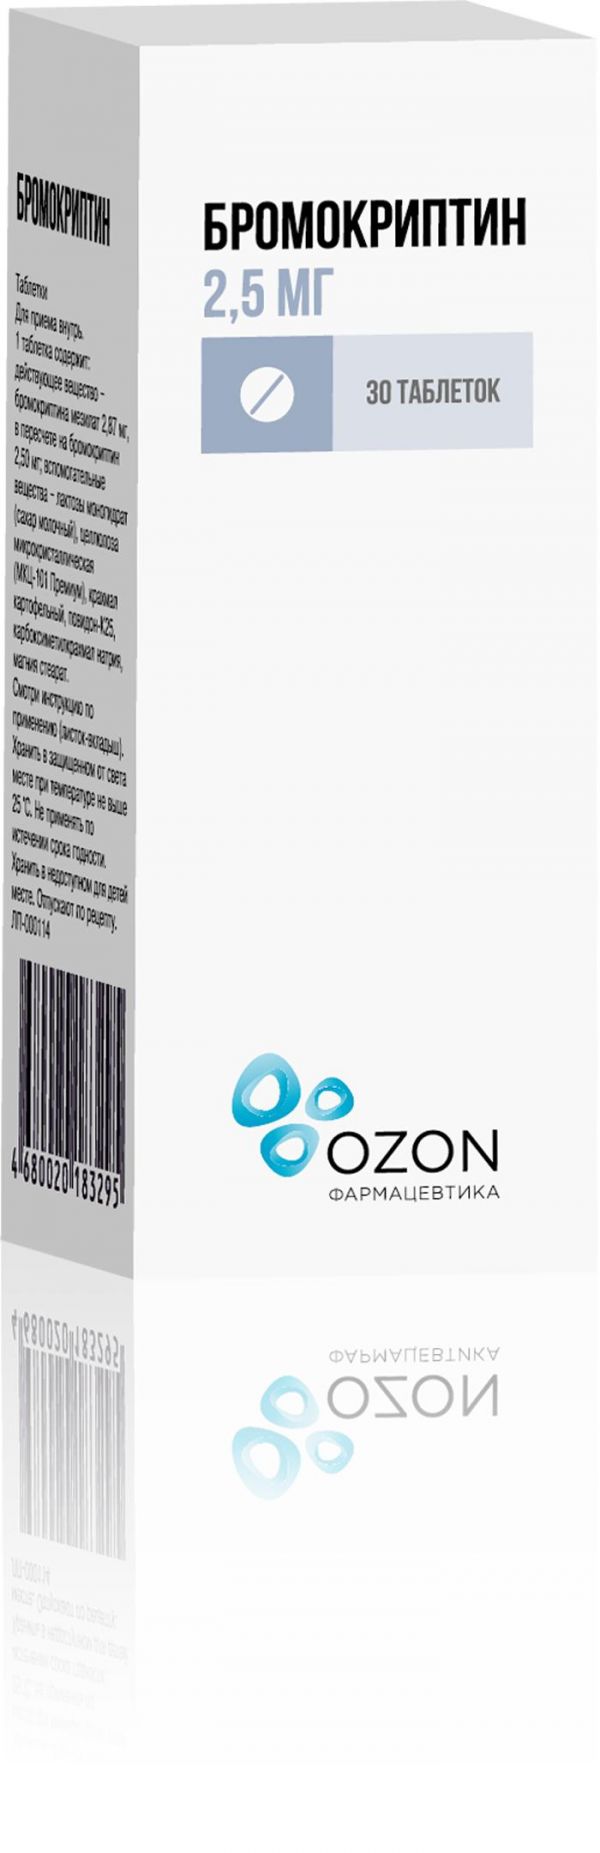 Бромокриптин 2.5мг таб. №30 (Озон ооо_2)